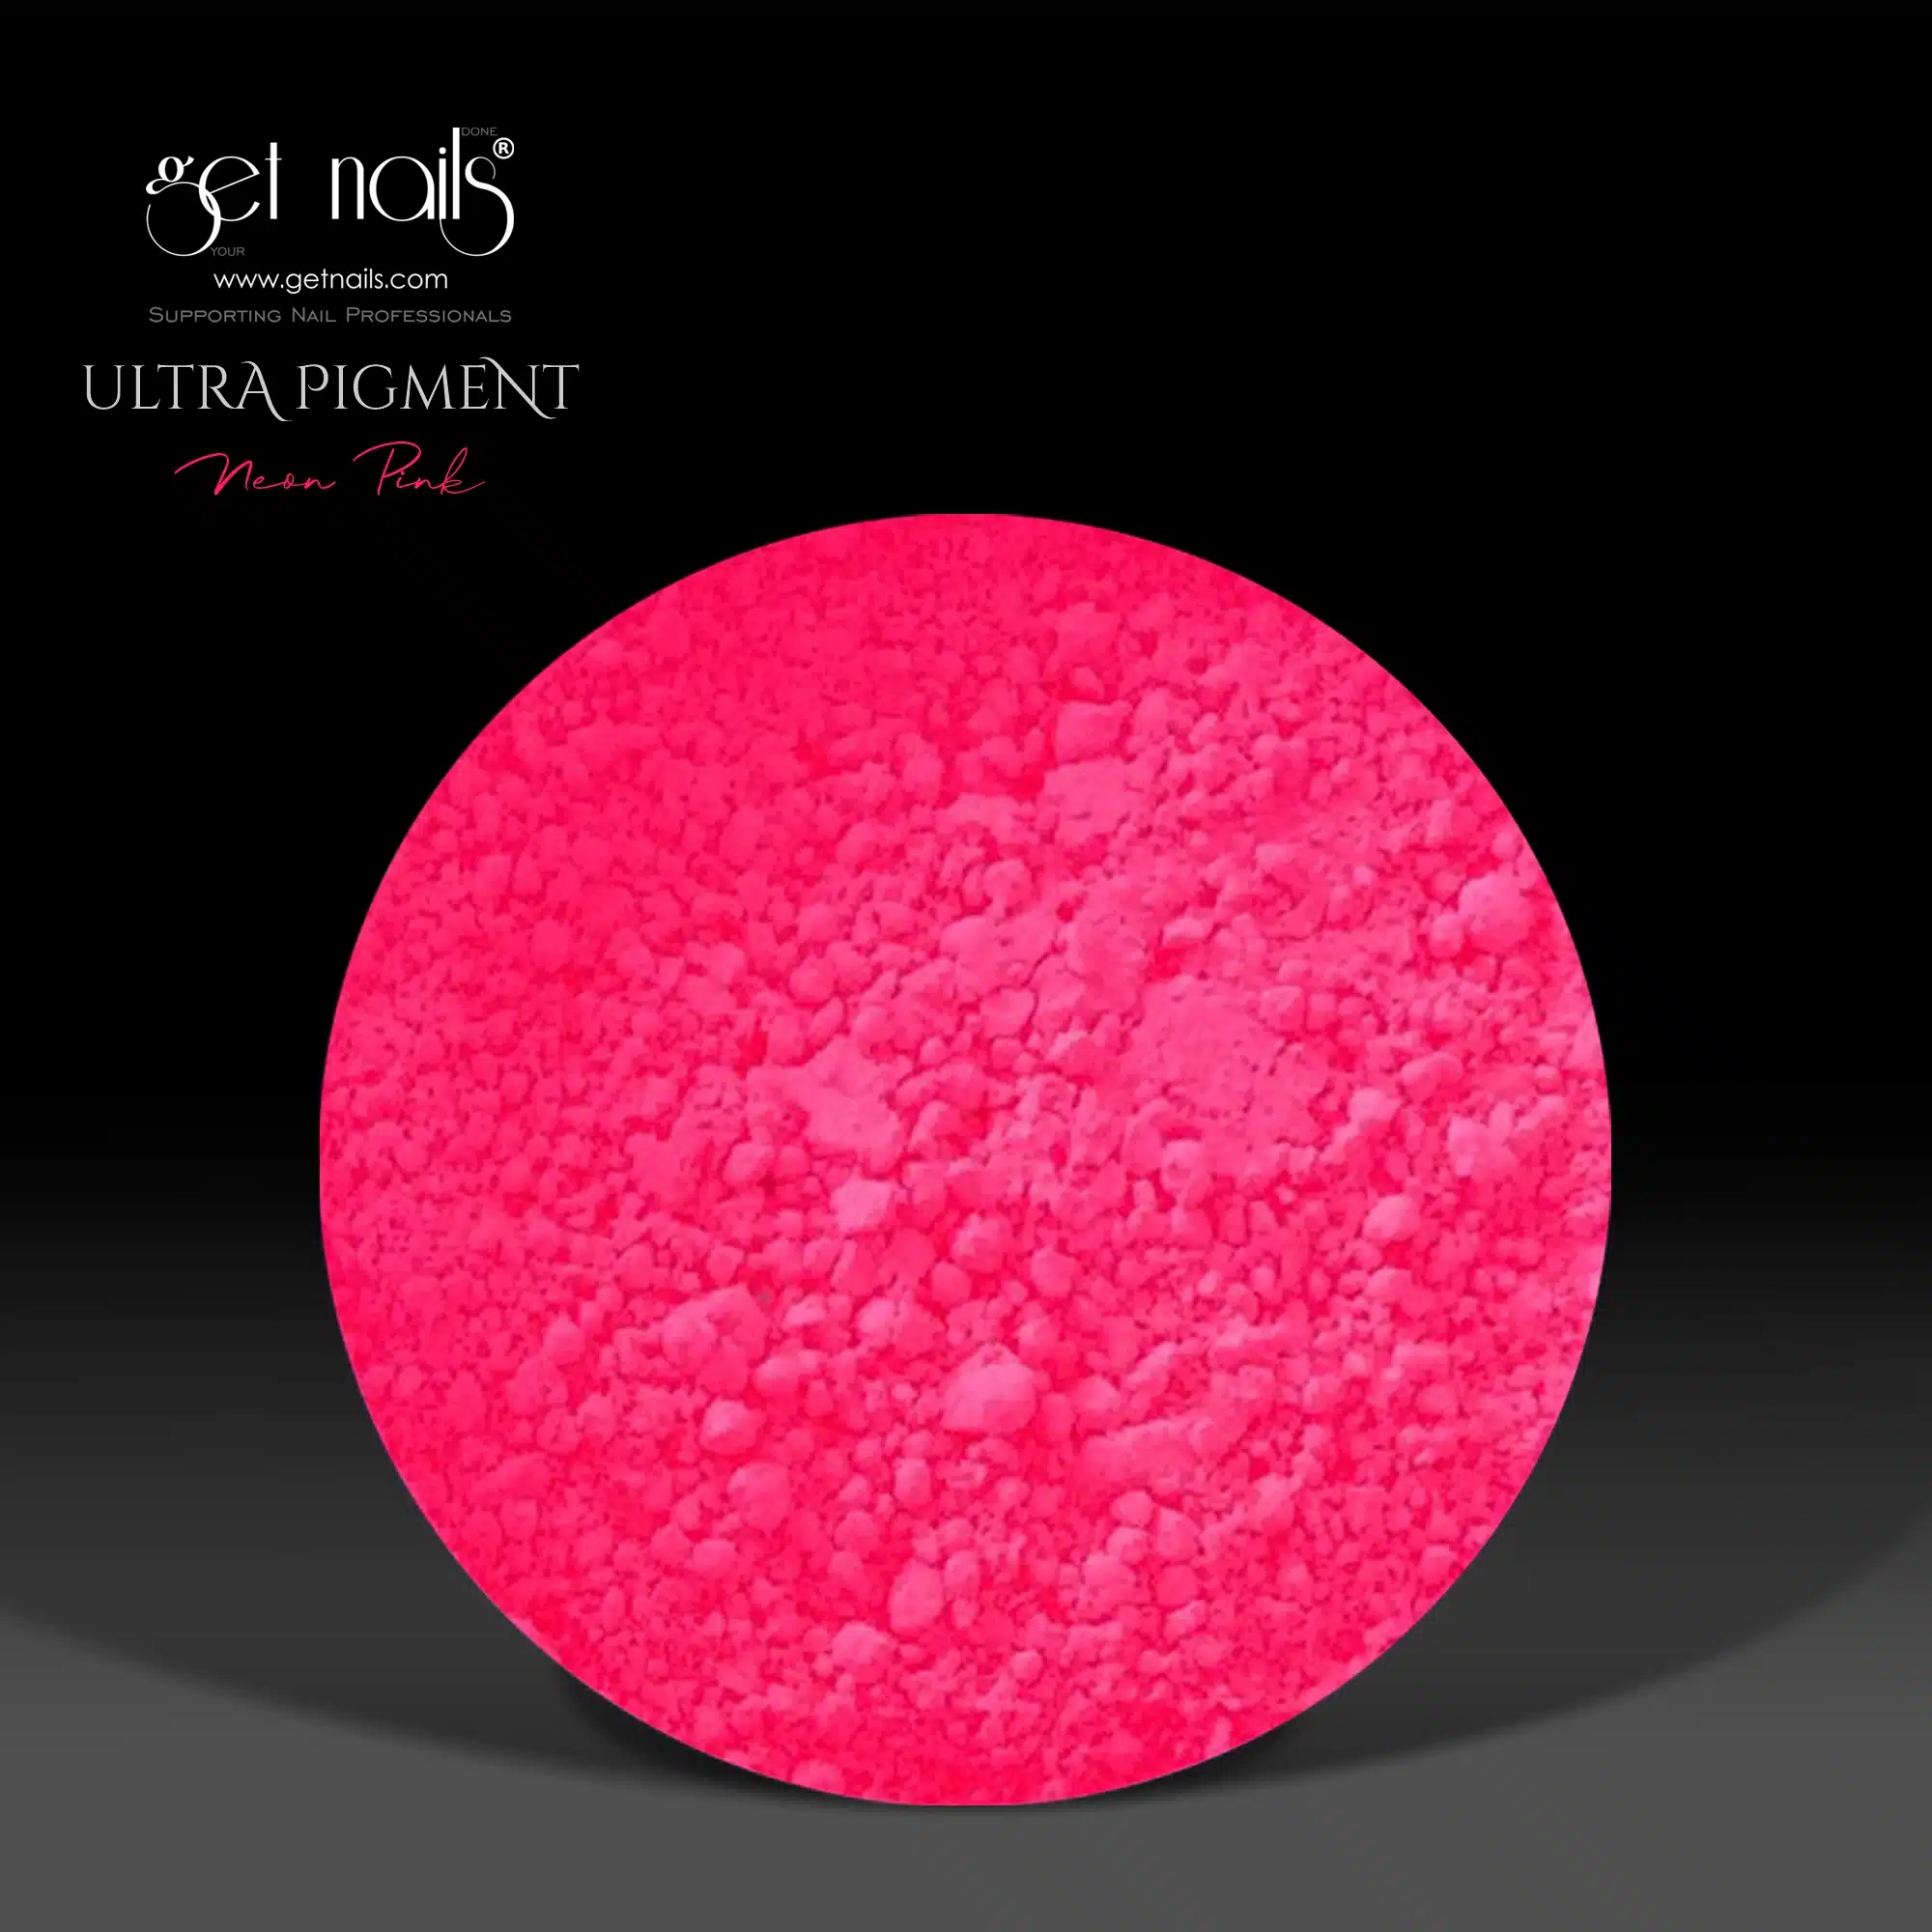 Get Nails Austria - Ультрапигмент неоновый розовый 1.5г